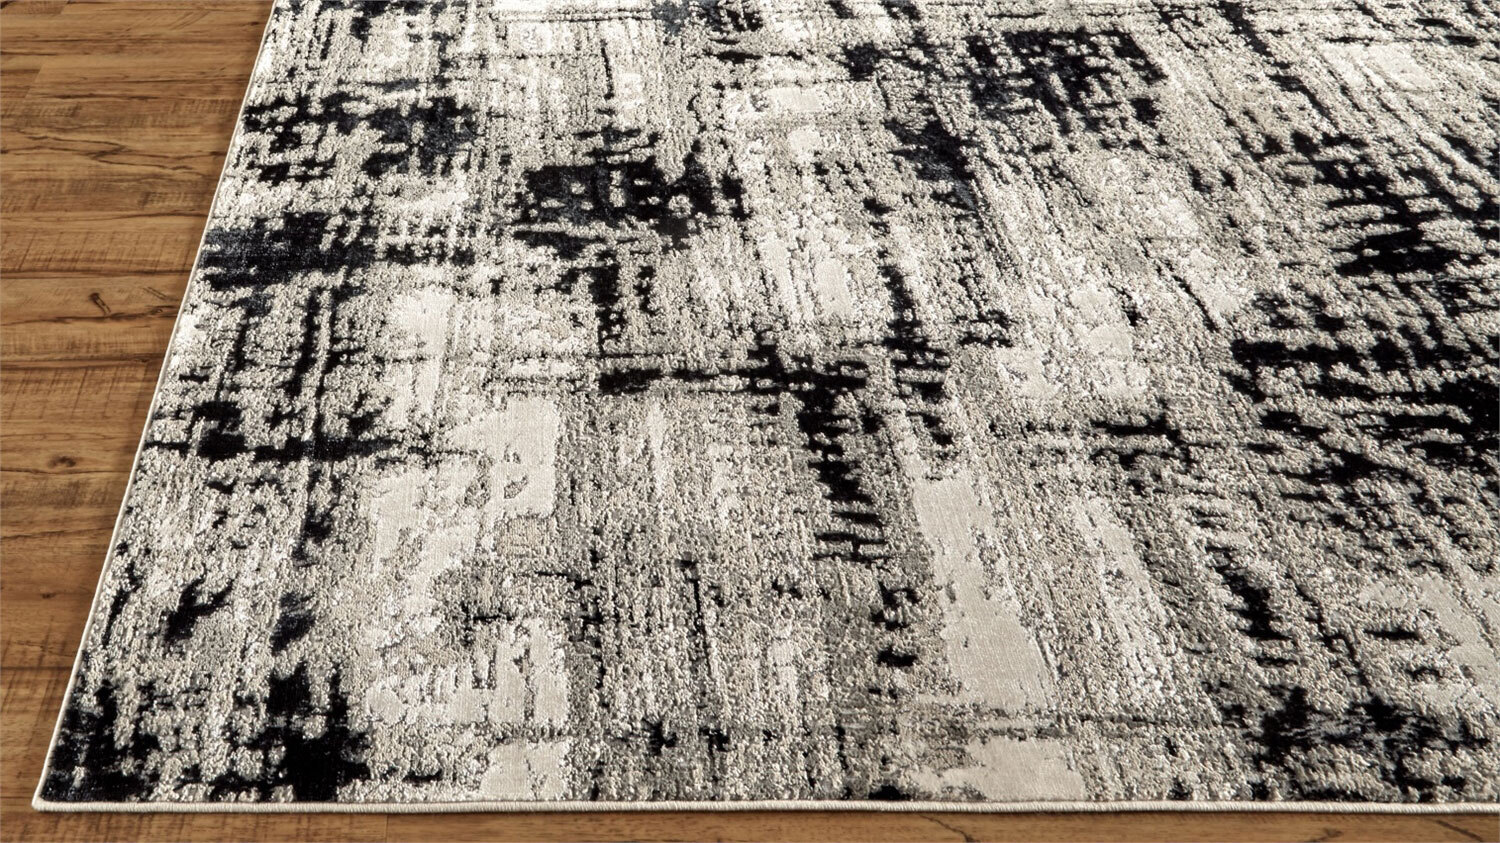 Mosaic Monotone Abstract Rug